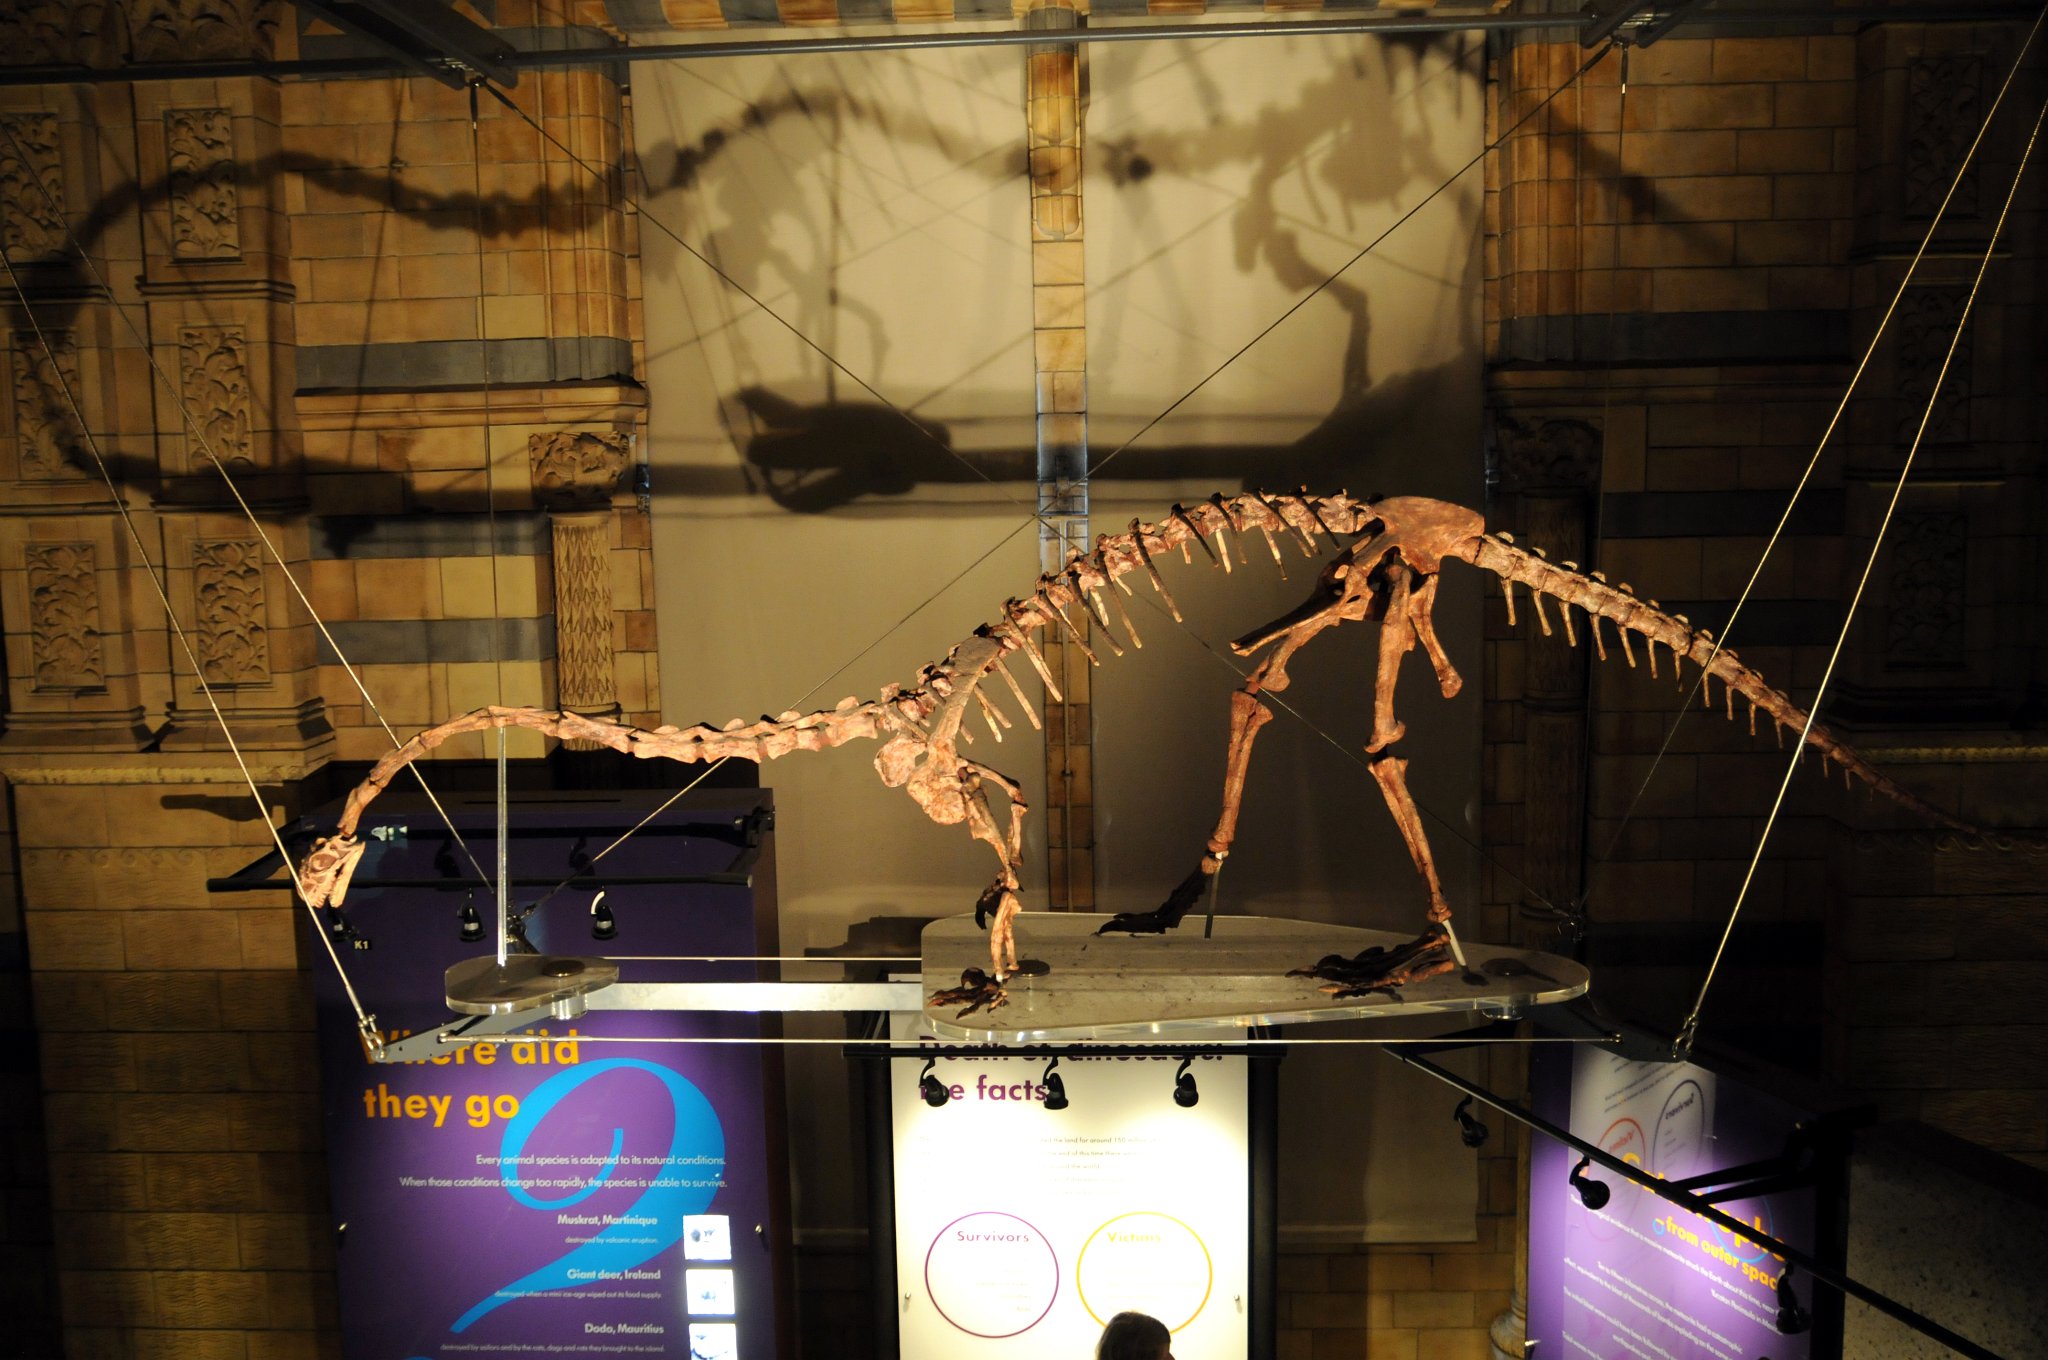 DSC_7122_1.jpg - Massospondylus („delší obratel“) byl býložravý prosauropodní dinosaurus dlouhý 5 až 6 m, který žil v období spodní jury před 200 až 183 milióny let. Jeho fosílie byly nalezeny v americké Arizoně, království Lesotho, Jihoafrické republice, Namíbii a v Zimbabwe. Massospondylus měl dlouhý tenký ocas, relativně slabší přední končetiny, sudovité tělo, dlouhý krk a poměrně malou hlavu vzhledem ke svým rozměrům. Pohyboval se po čtyřech, ale pokud se chtěl dostat k výše položené potravě, mohl se postavit na zadní nohy. V roce 1981 se objevila teorie, že Massospondylus byl všežravec. Tuto teorii podporují dlouhé a silné přední zuby, které umožňují trhání masa a ploché zadní zuby umožňující drcení rostlinné potravy. Roku 1985 přišla teorie, že rostlinnou potravu ukusoval a zpracovával jako leguán. V kosterních pozůstatcích byly také nalezeny gastrolity. Dnes se zdá být jisté, že tento dinosaurus byl všežravec. Sám se mohl stát kořistí větších dravců, jako byli rauisuchiani nebo krurotarsani, tedy predátoři ze skupiny Crurotarsi.